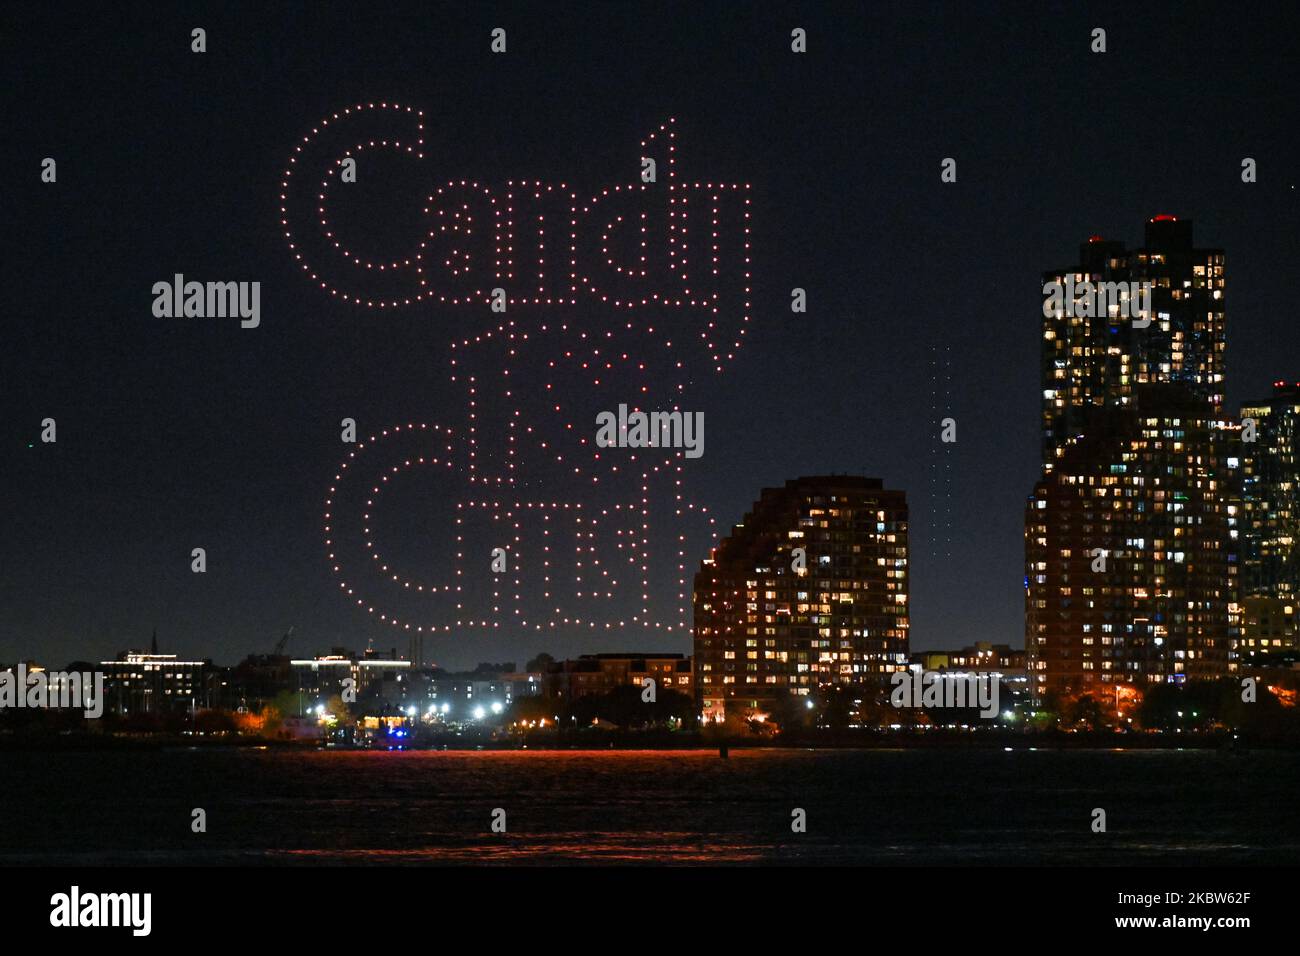 Über 500 Drohnen zeigen eine Lichtshow über dem Hudson River, um am 3. November 2022 i das 10.-jährige Jubiläum des mobilen Spiels Candy Crush Saga zu feiern Stockfoto